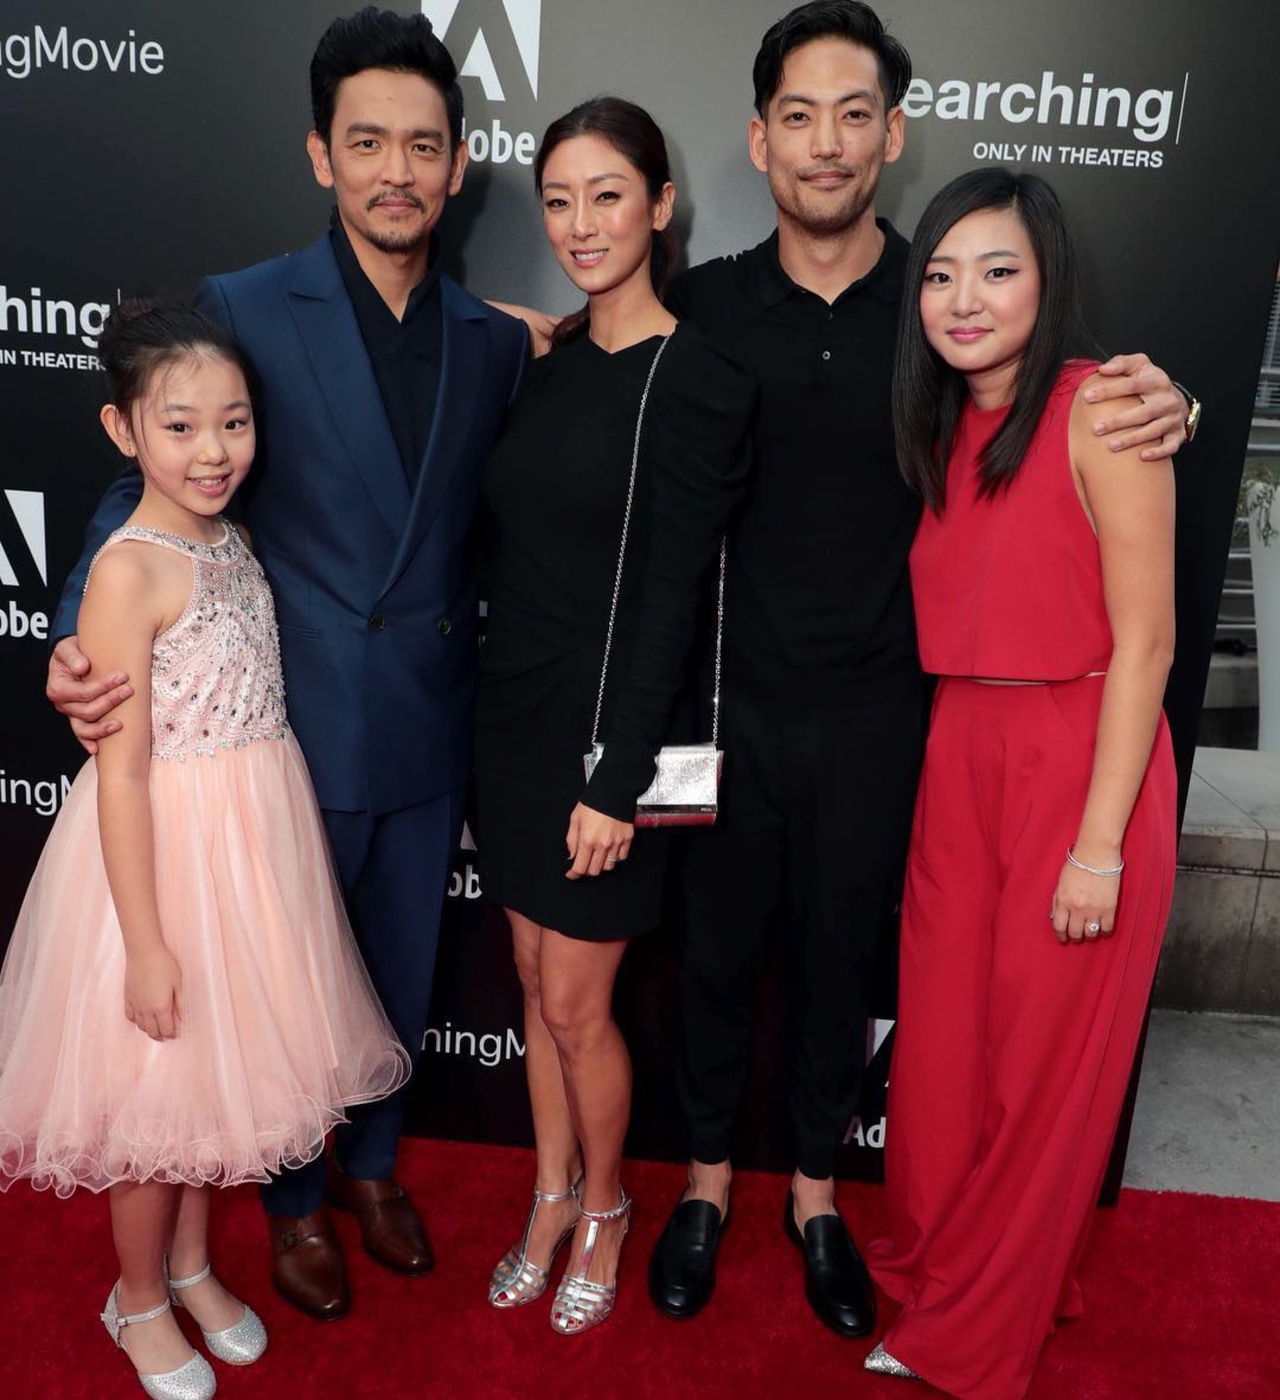 جان چو در صحنه فیلم سینمایی Searching به همراه Sara Sohn، Megan Liu، Michelle La و Joseph Lee